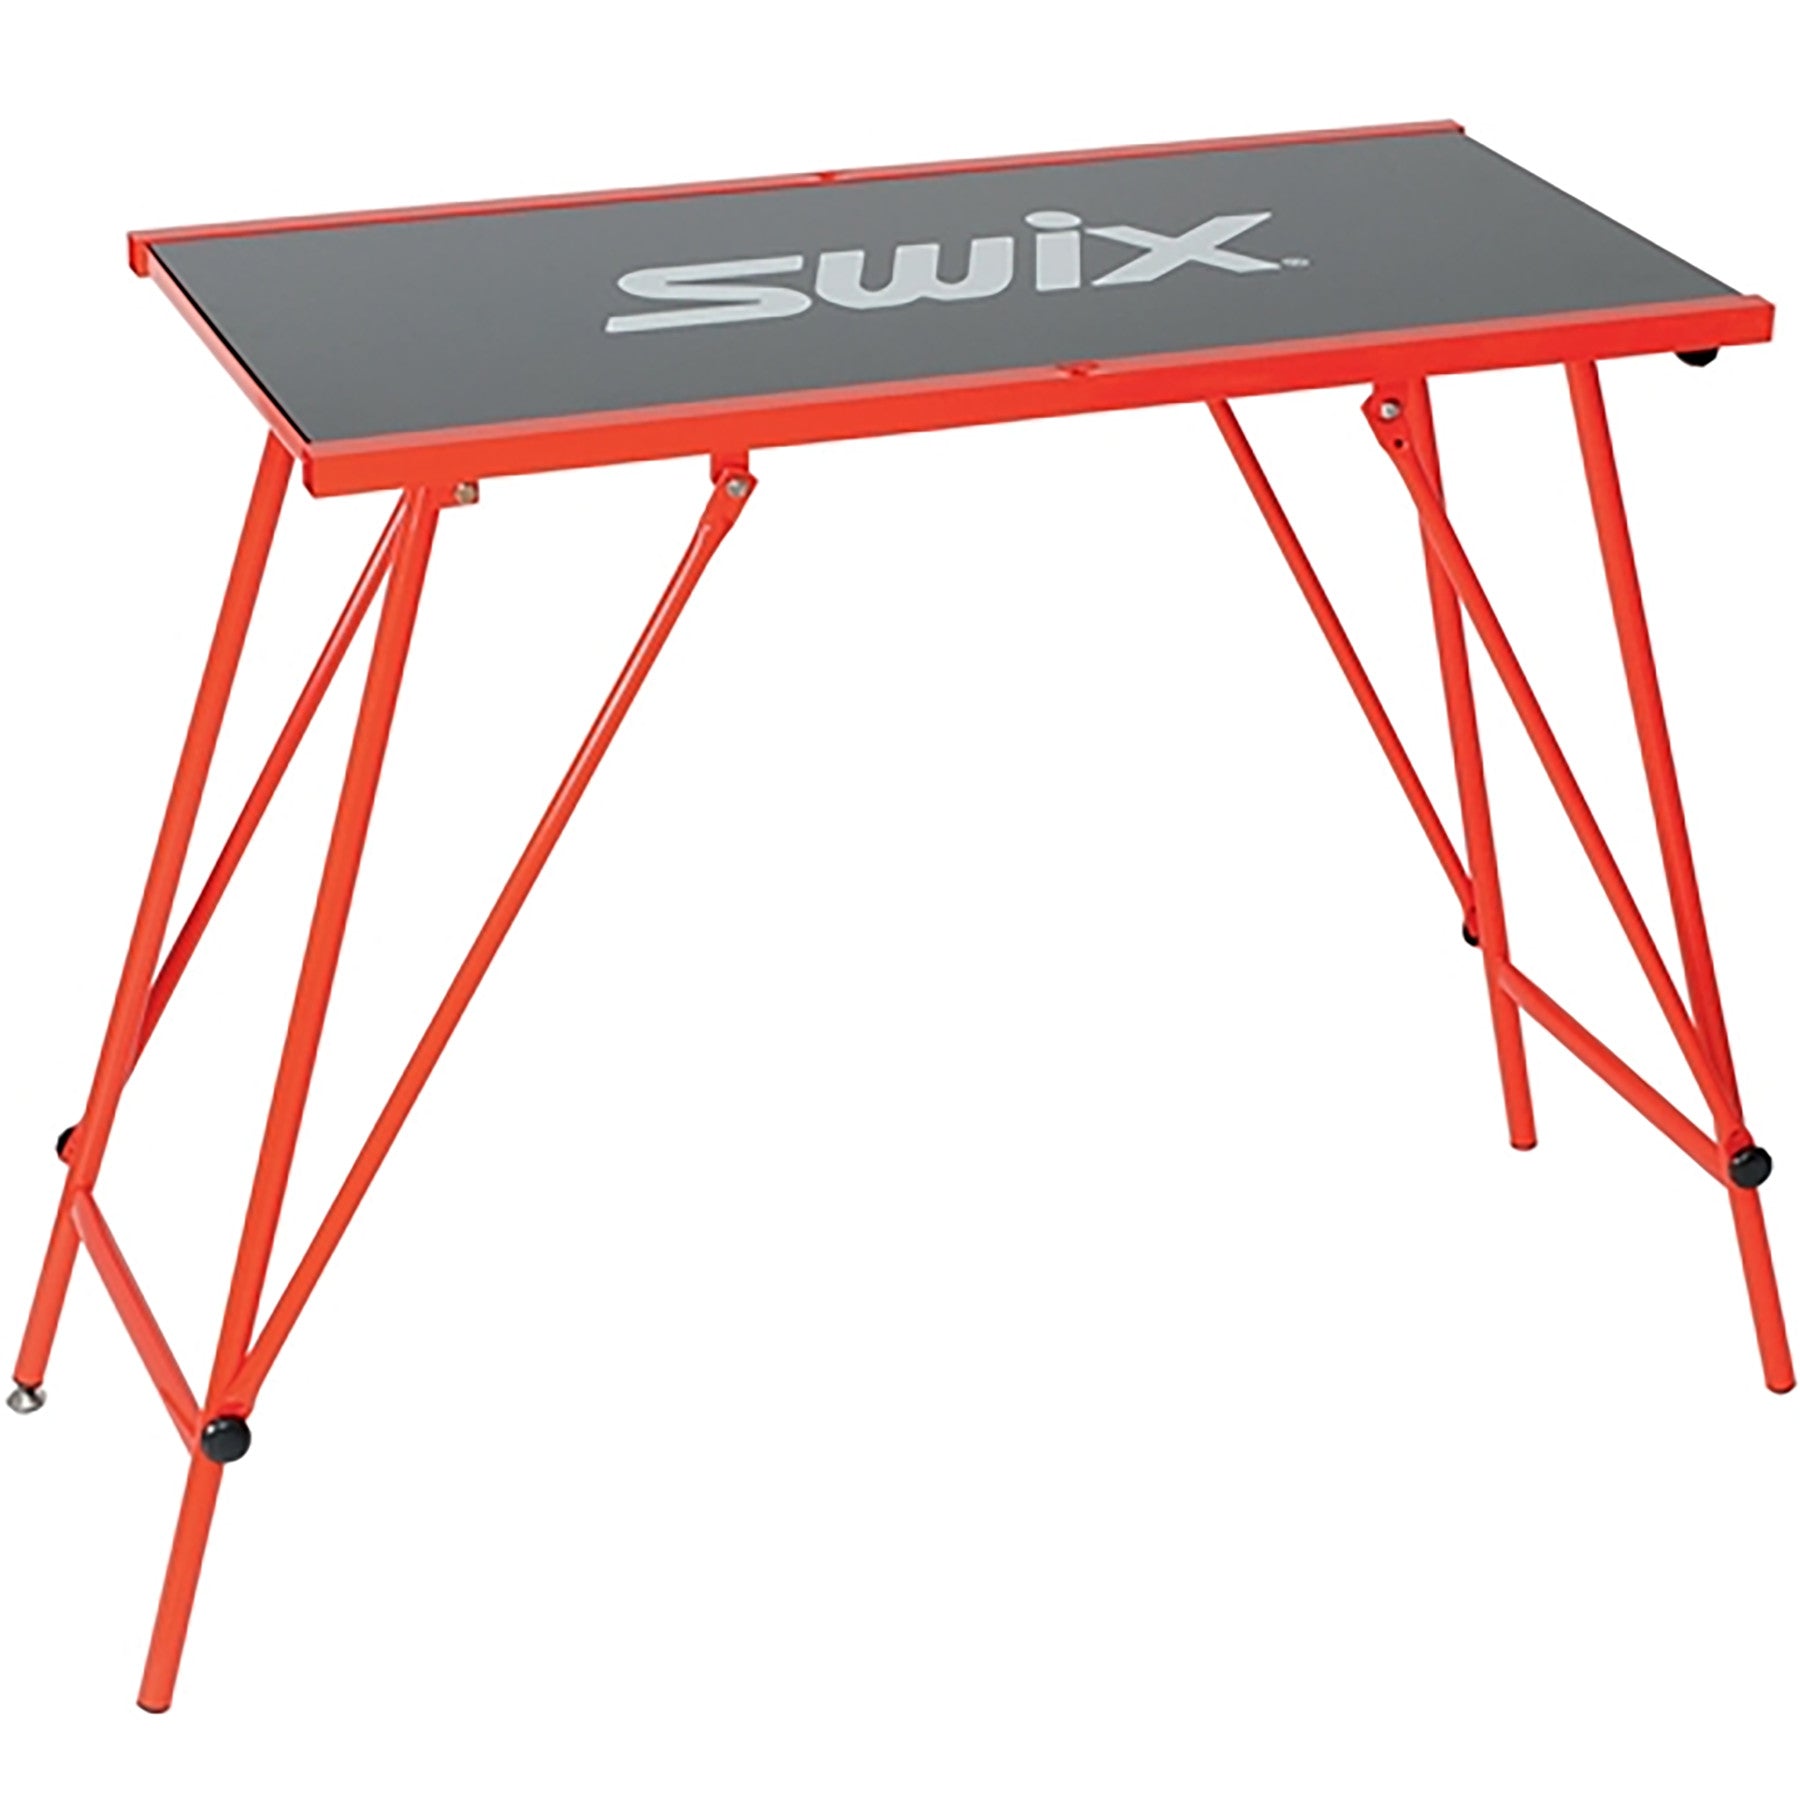 Swix T754 Economy Wax Table 76 x 45cm